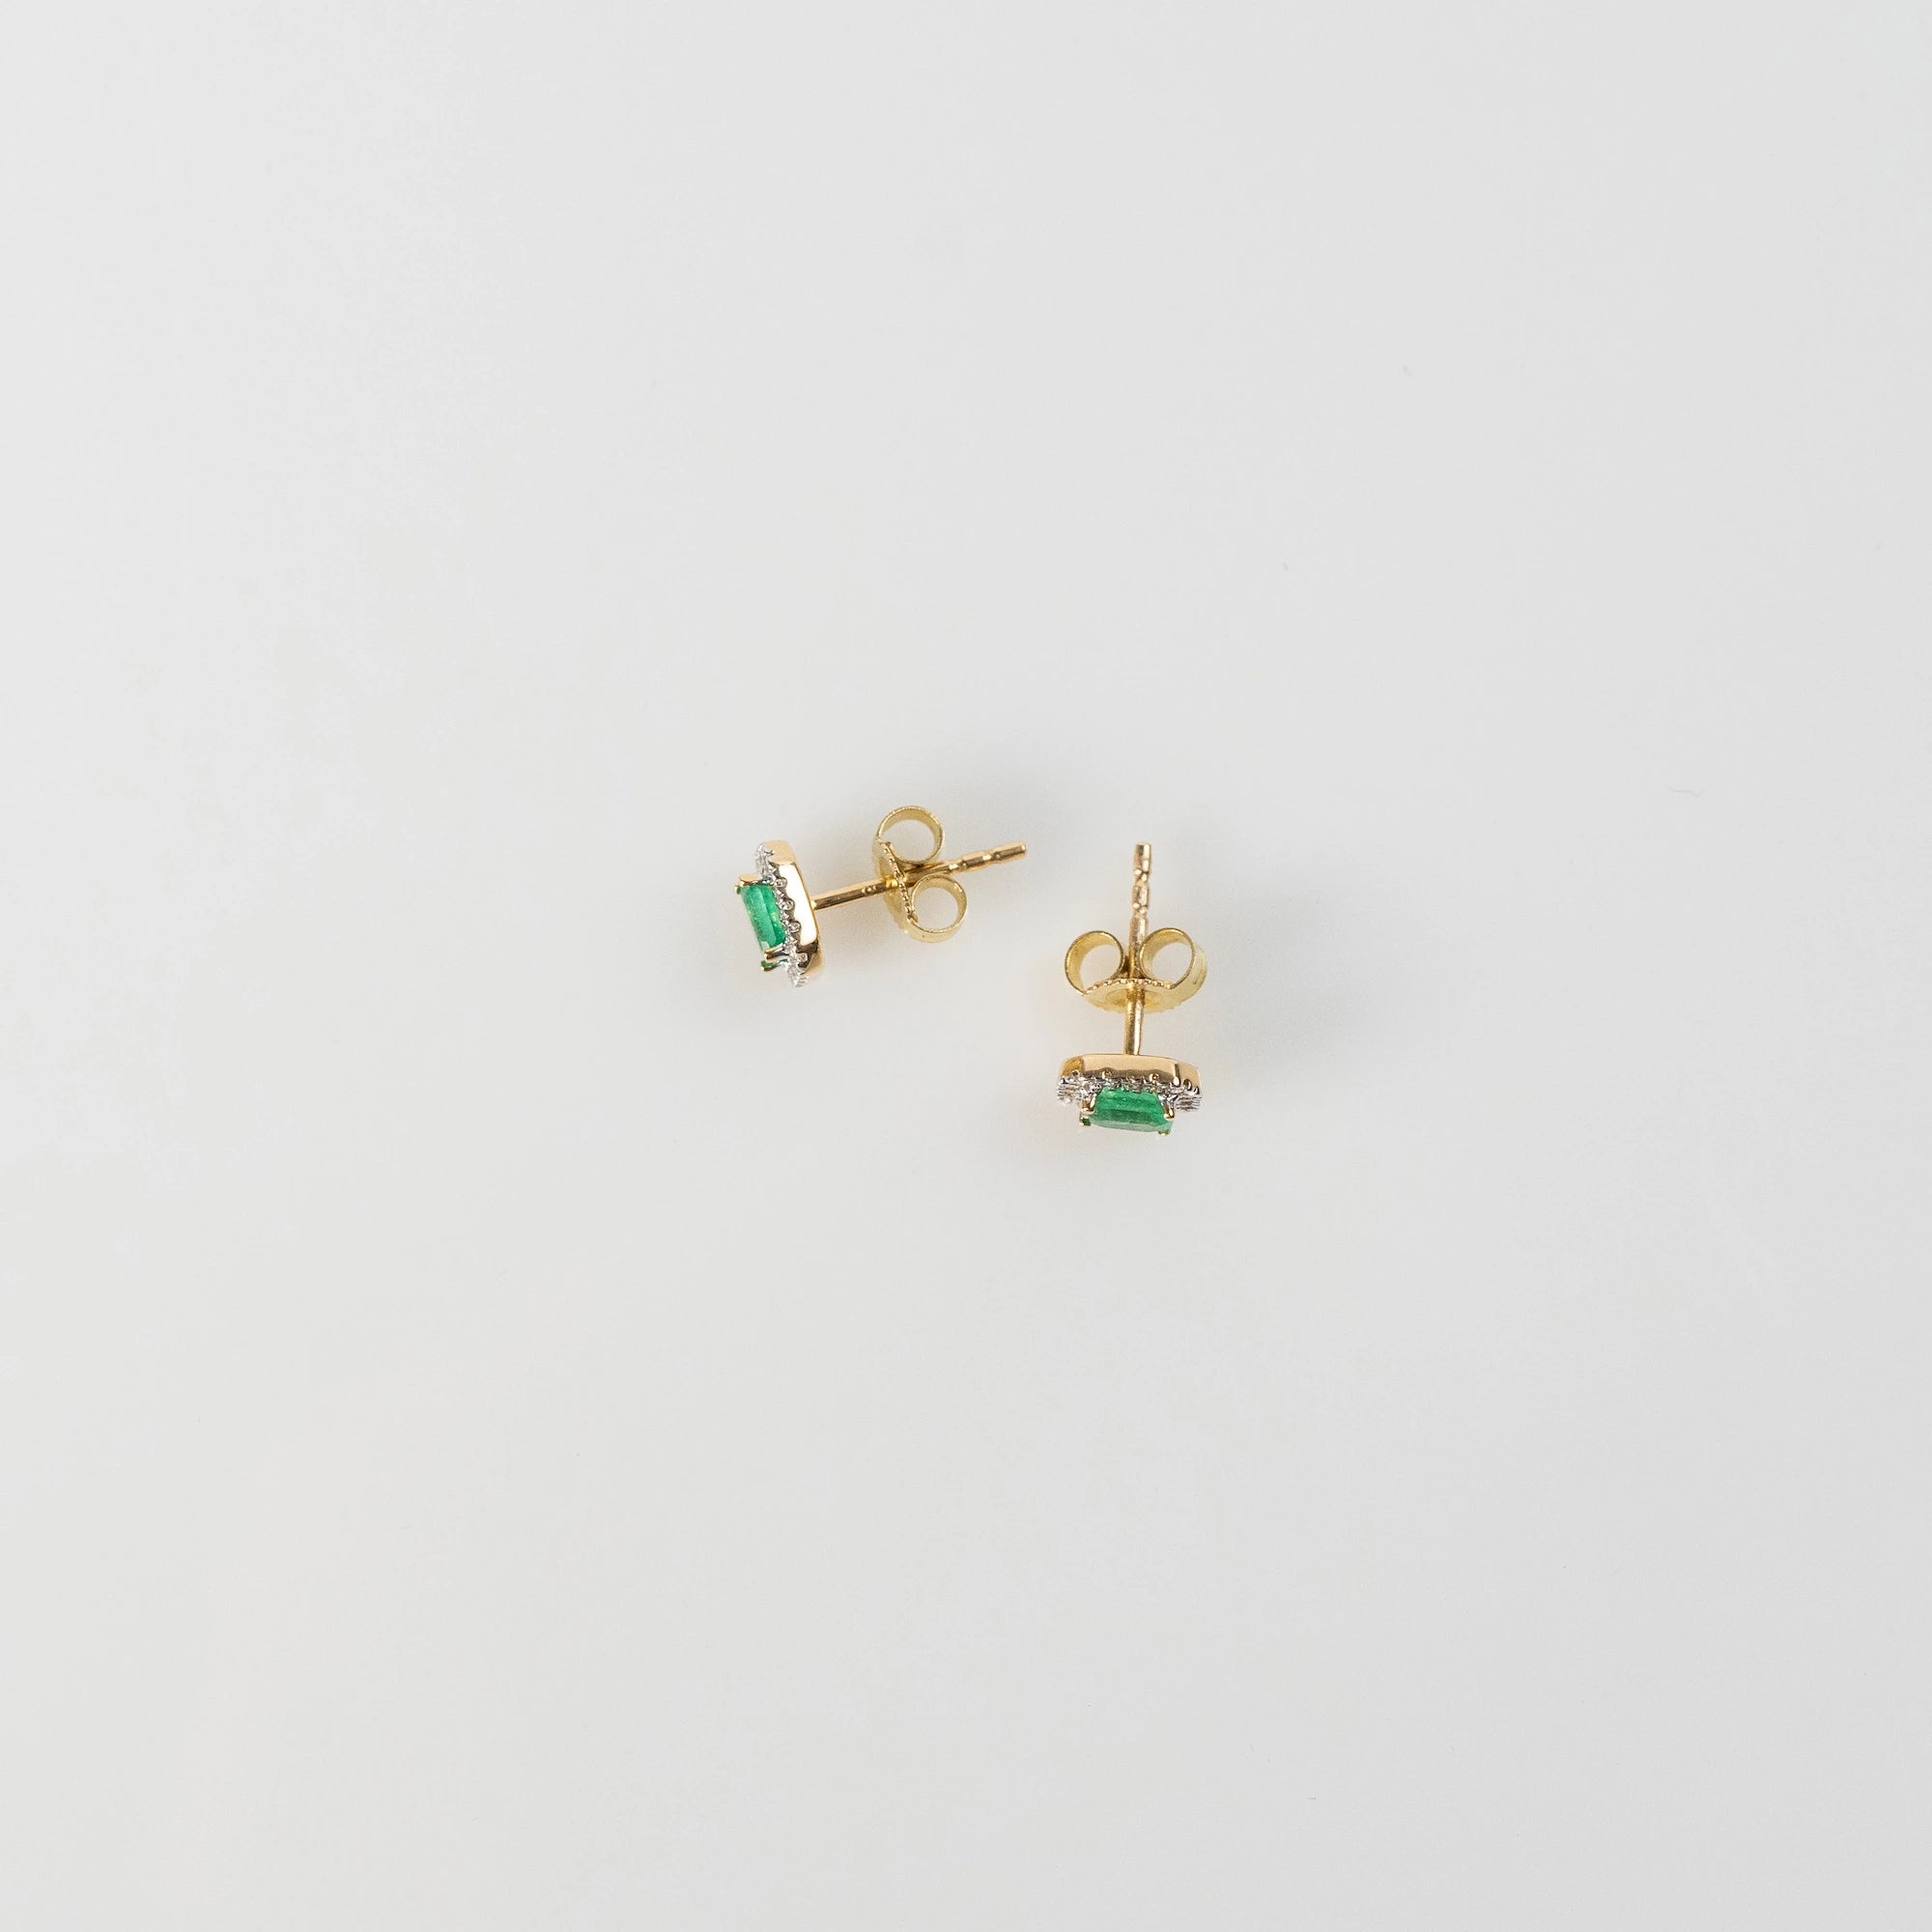 Draufsicht auf die aus Gelbgold gefertigten Smaragd-Brillant-Ohrstecker aus der Schmuckatelier Lang Collection, bei denen der zentrale, kräftig grüne Smaragd durch einen Diamantkranz eingerahmt ist - Foto zeigt den Verschlussmechanismus der Ohrstecker